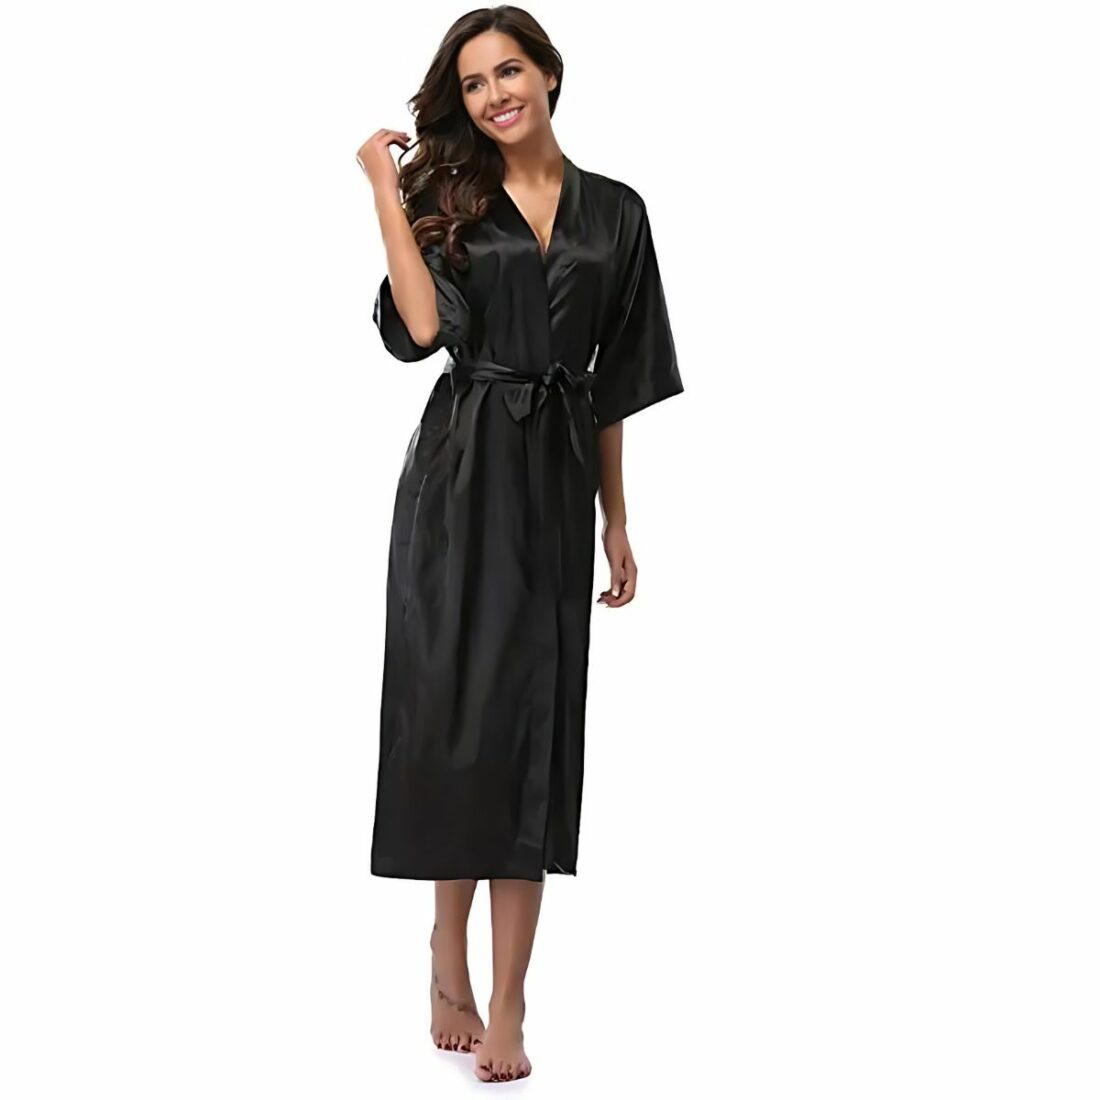 Robe de chambre longue unie en satin pour femme IMG 15 02 robe chambre longue unie femme portee noir